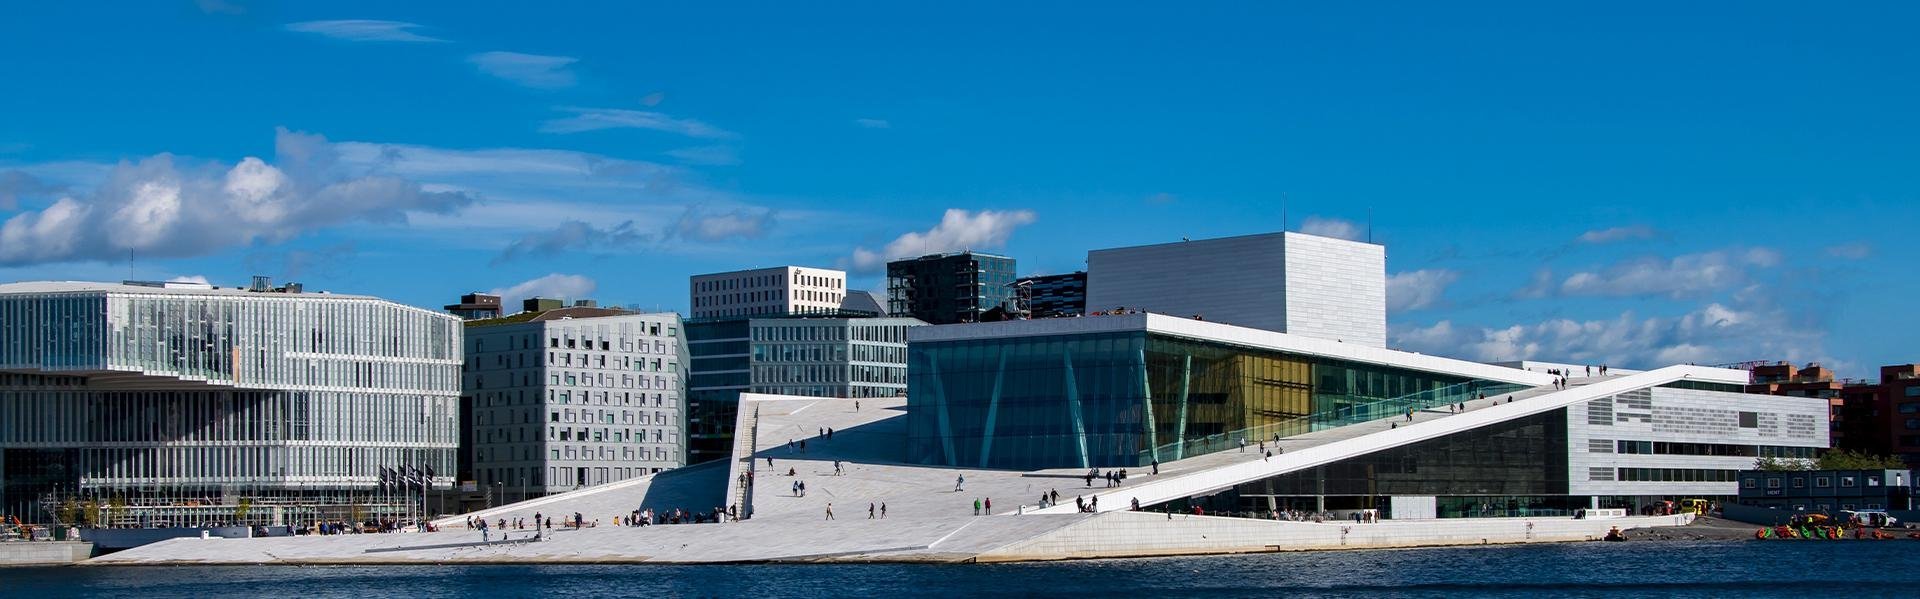 Opera van Oslo, Noorwegen